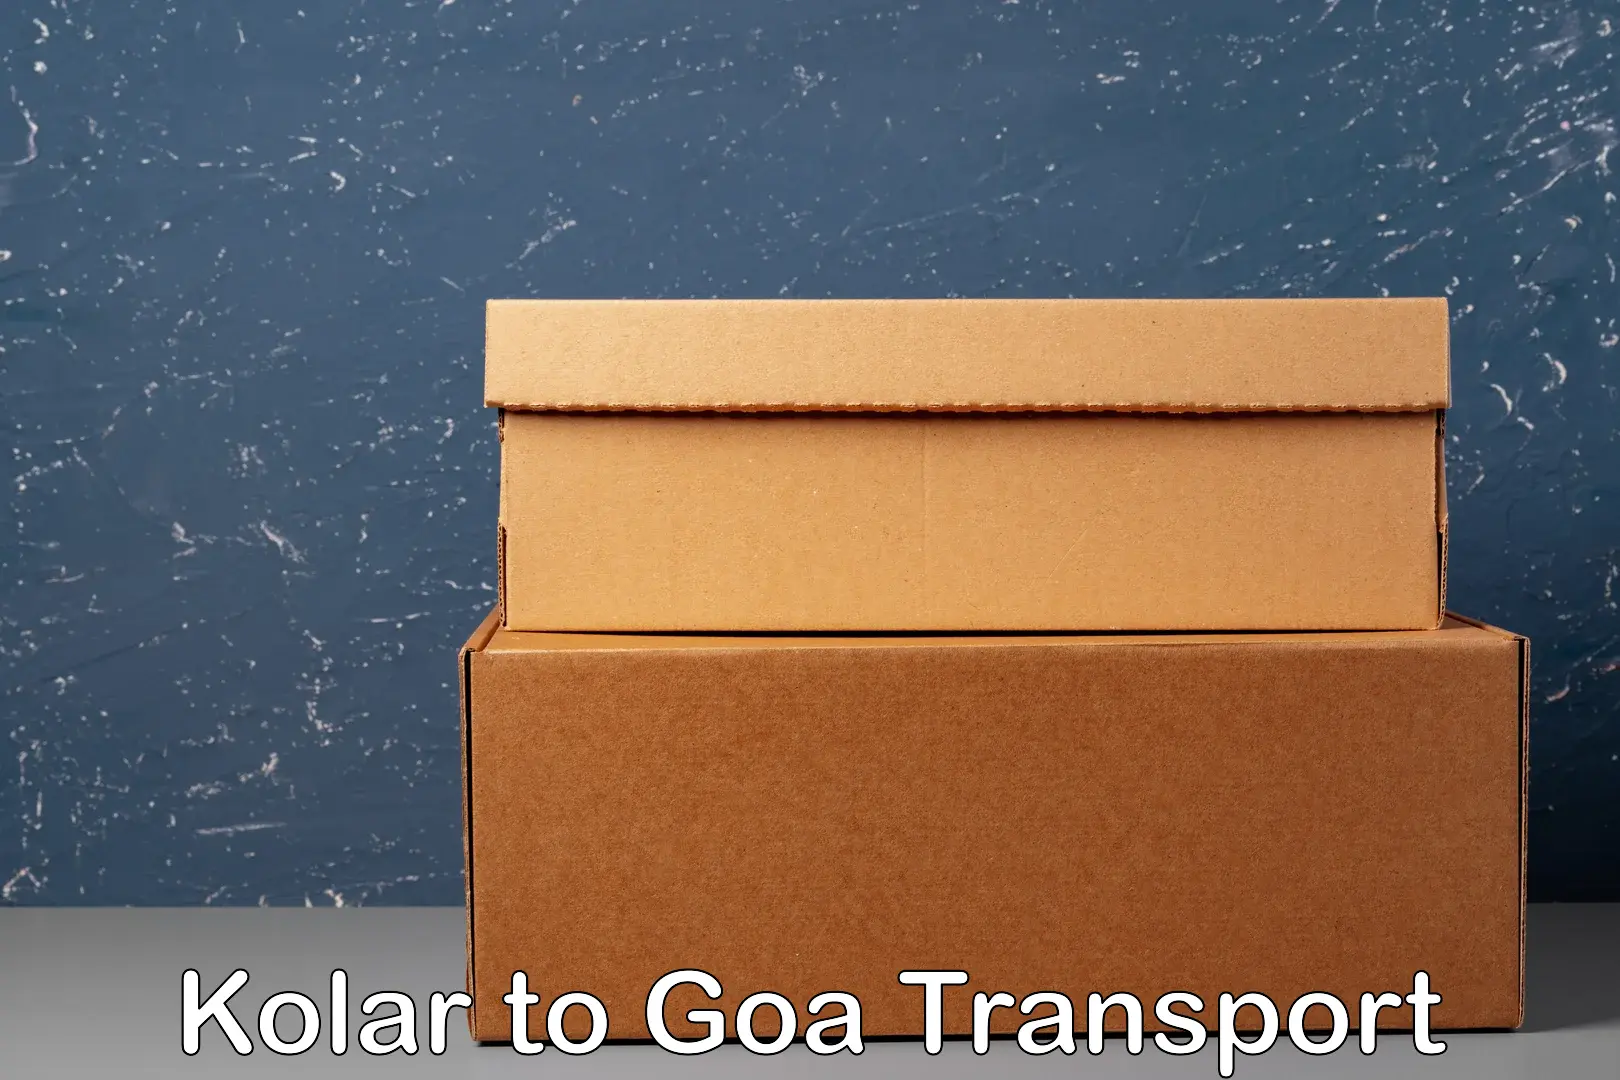 Shipping partner Kolar to IIT Goa